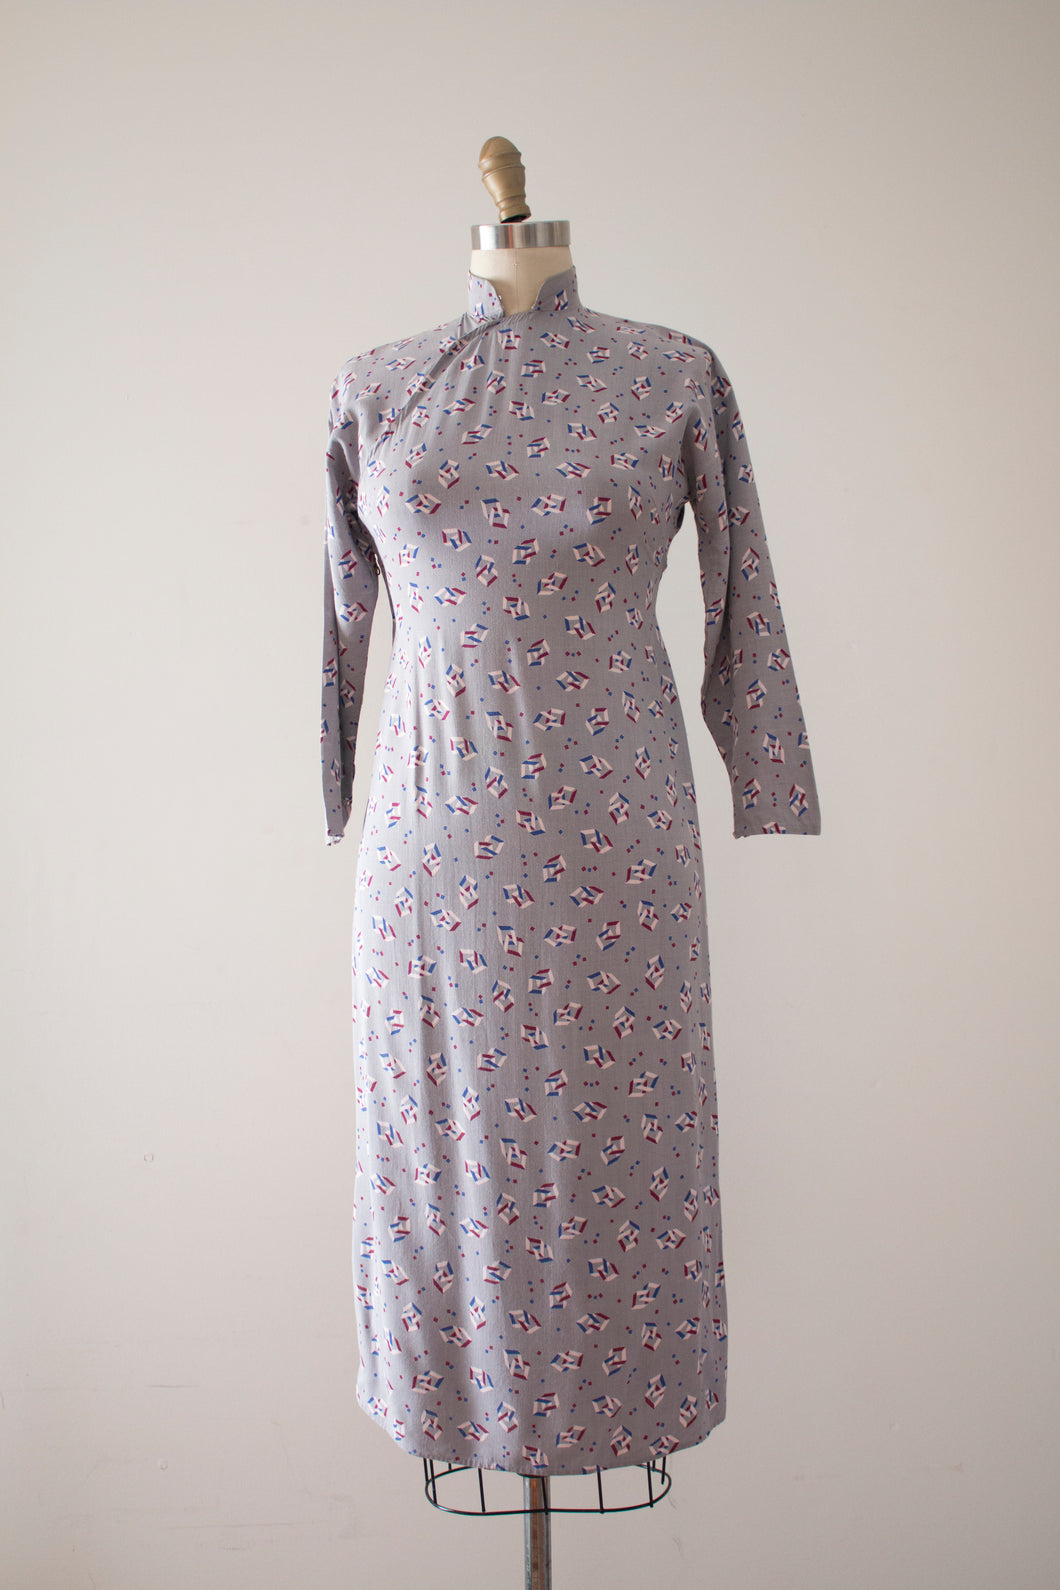 CLEARANCE vintage 1940s novelty print Cheongsam dress